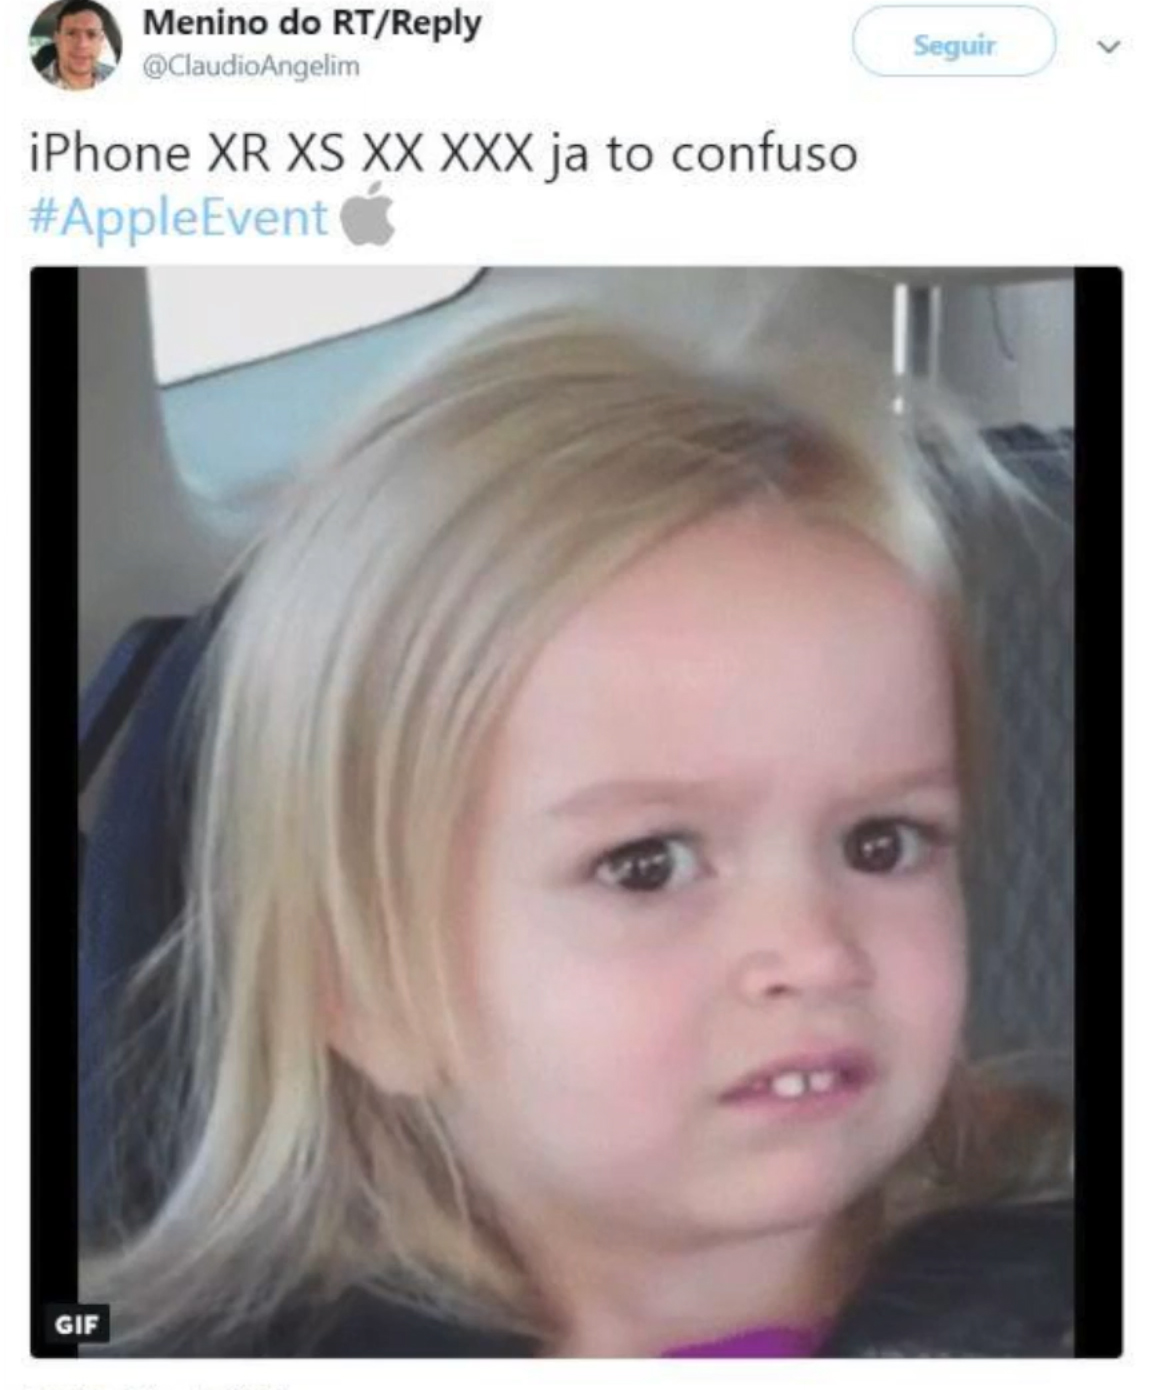 Meme sobre el nombre de los nuevos iPhone XS y XS Max